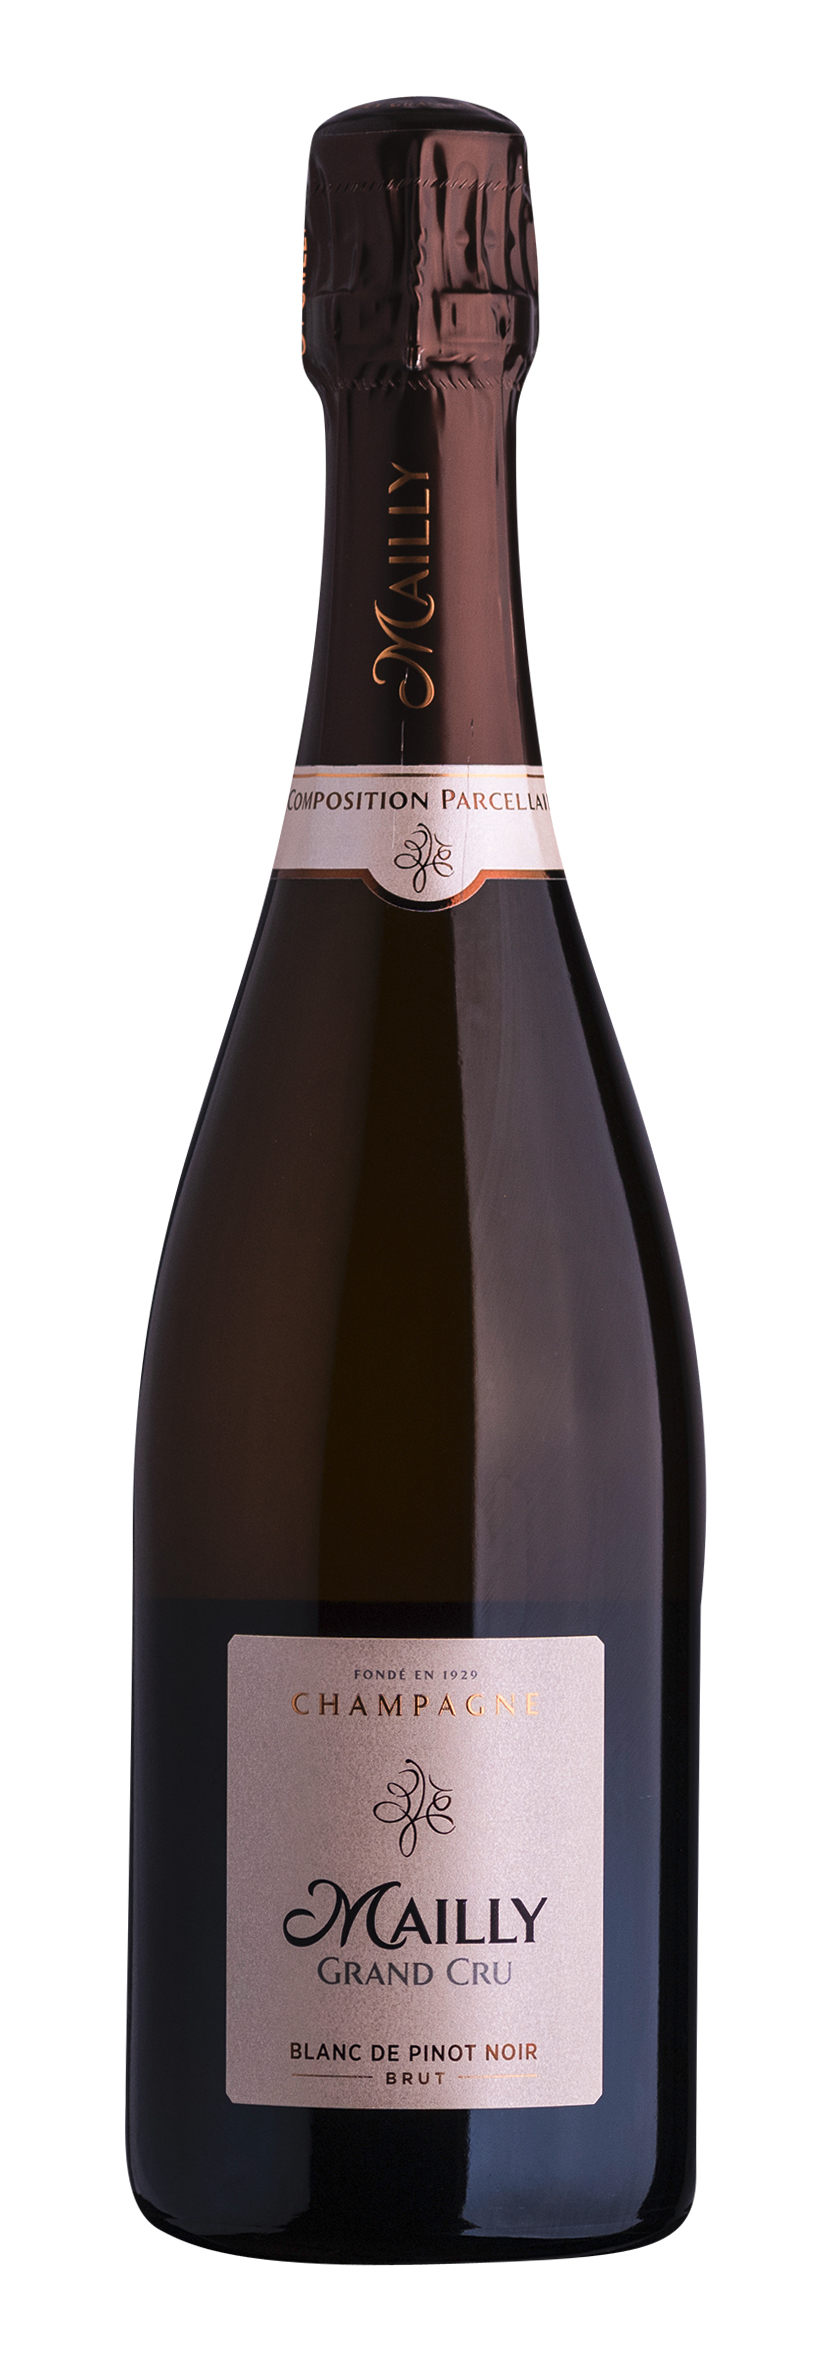 Champagne AOC Grand Cru Blanc de Pinot Noir Composition Parcellaire 0